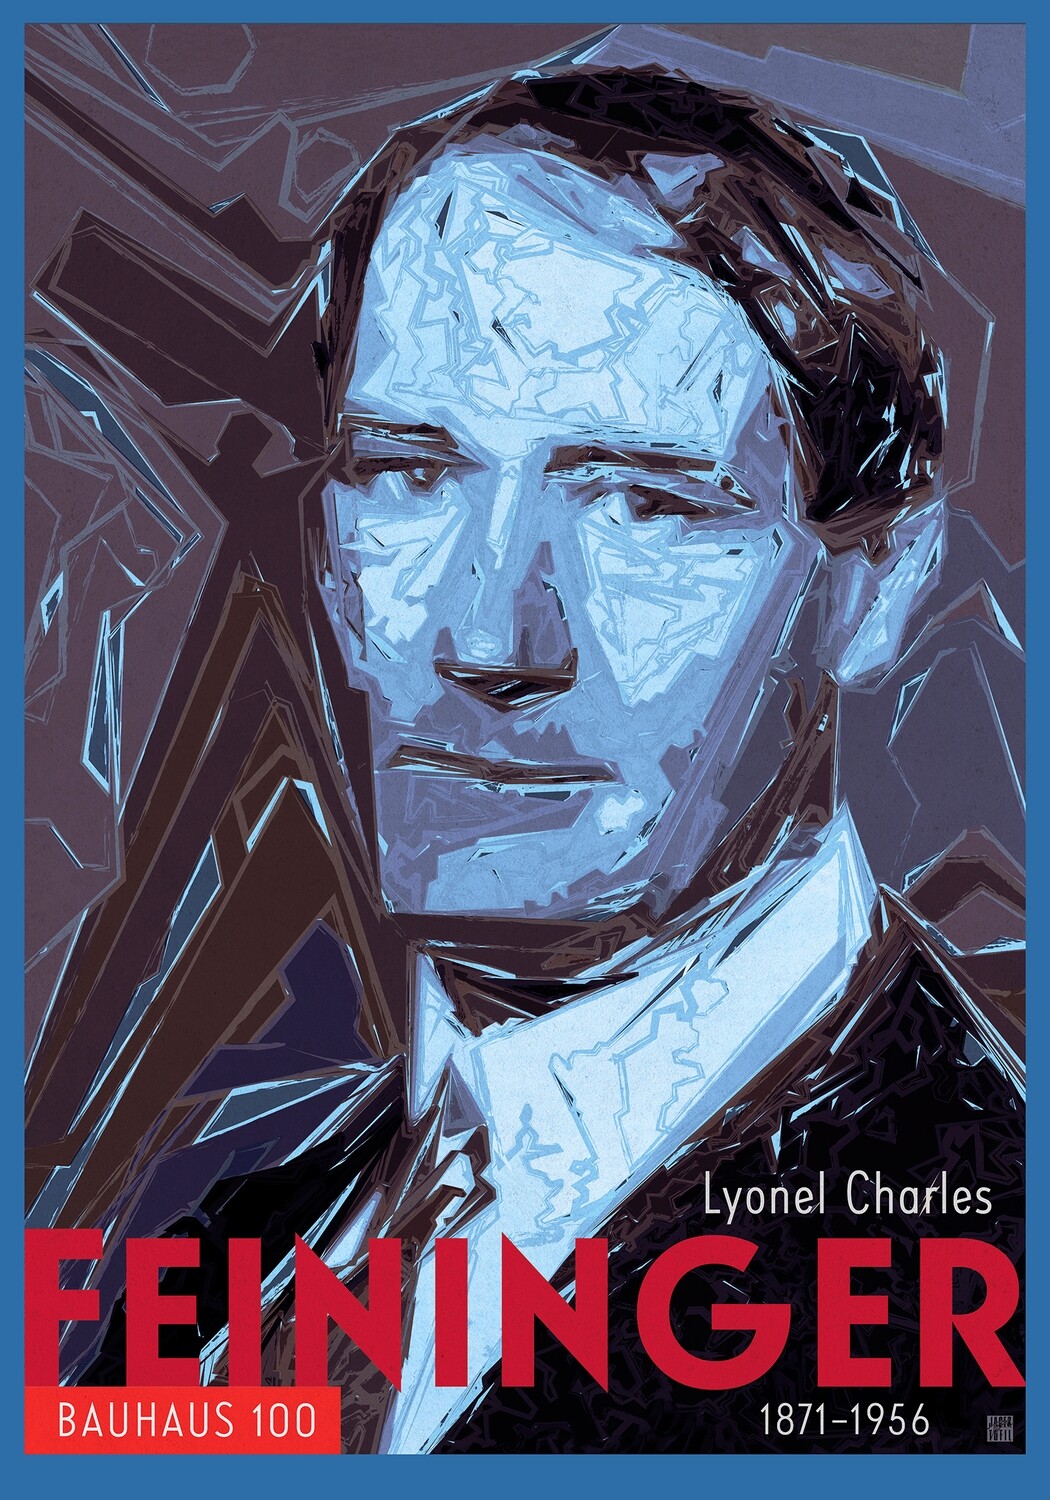 Lyonel Charles Feininger 1871-1956